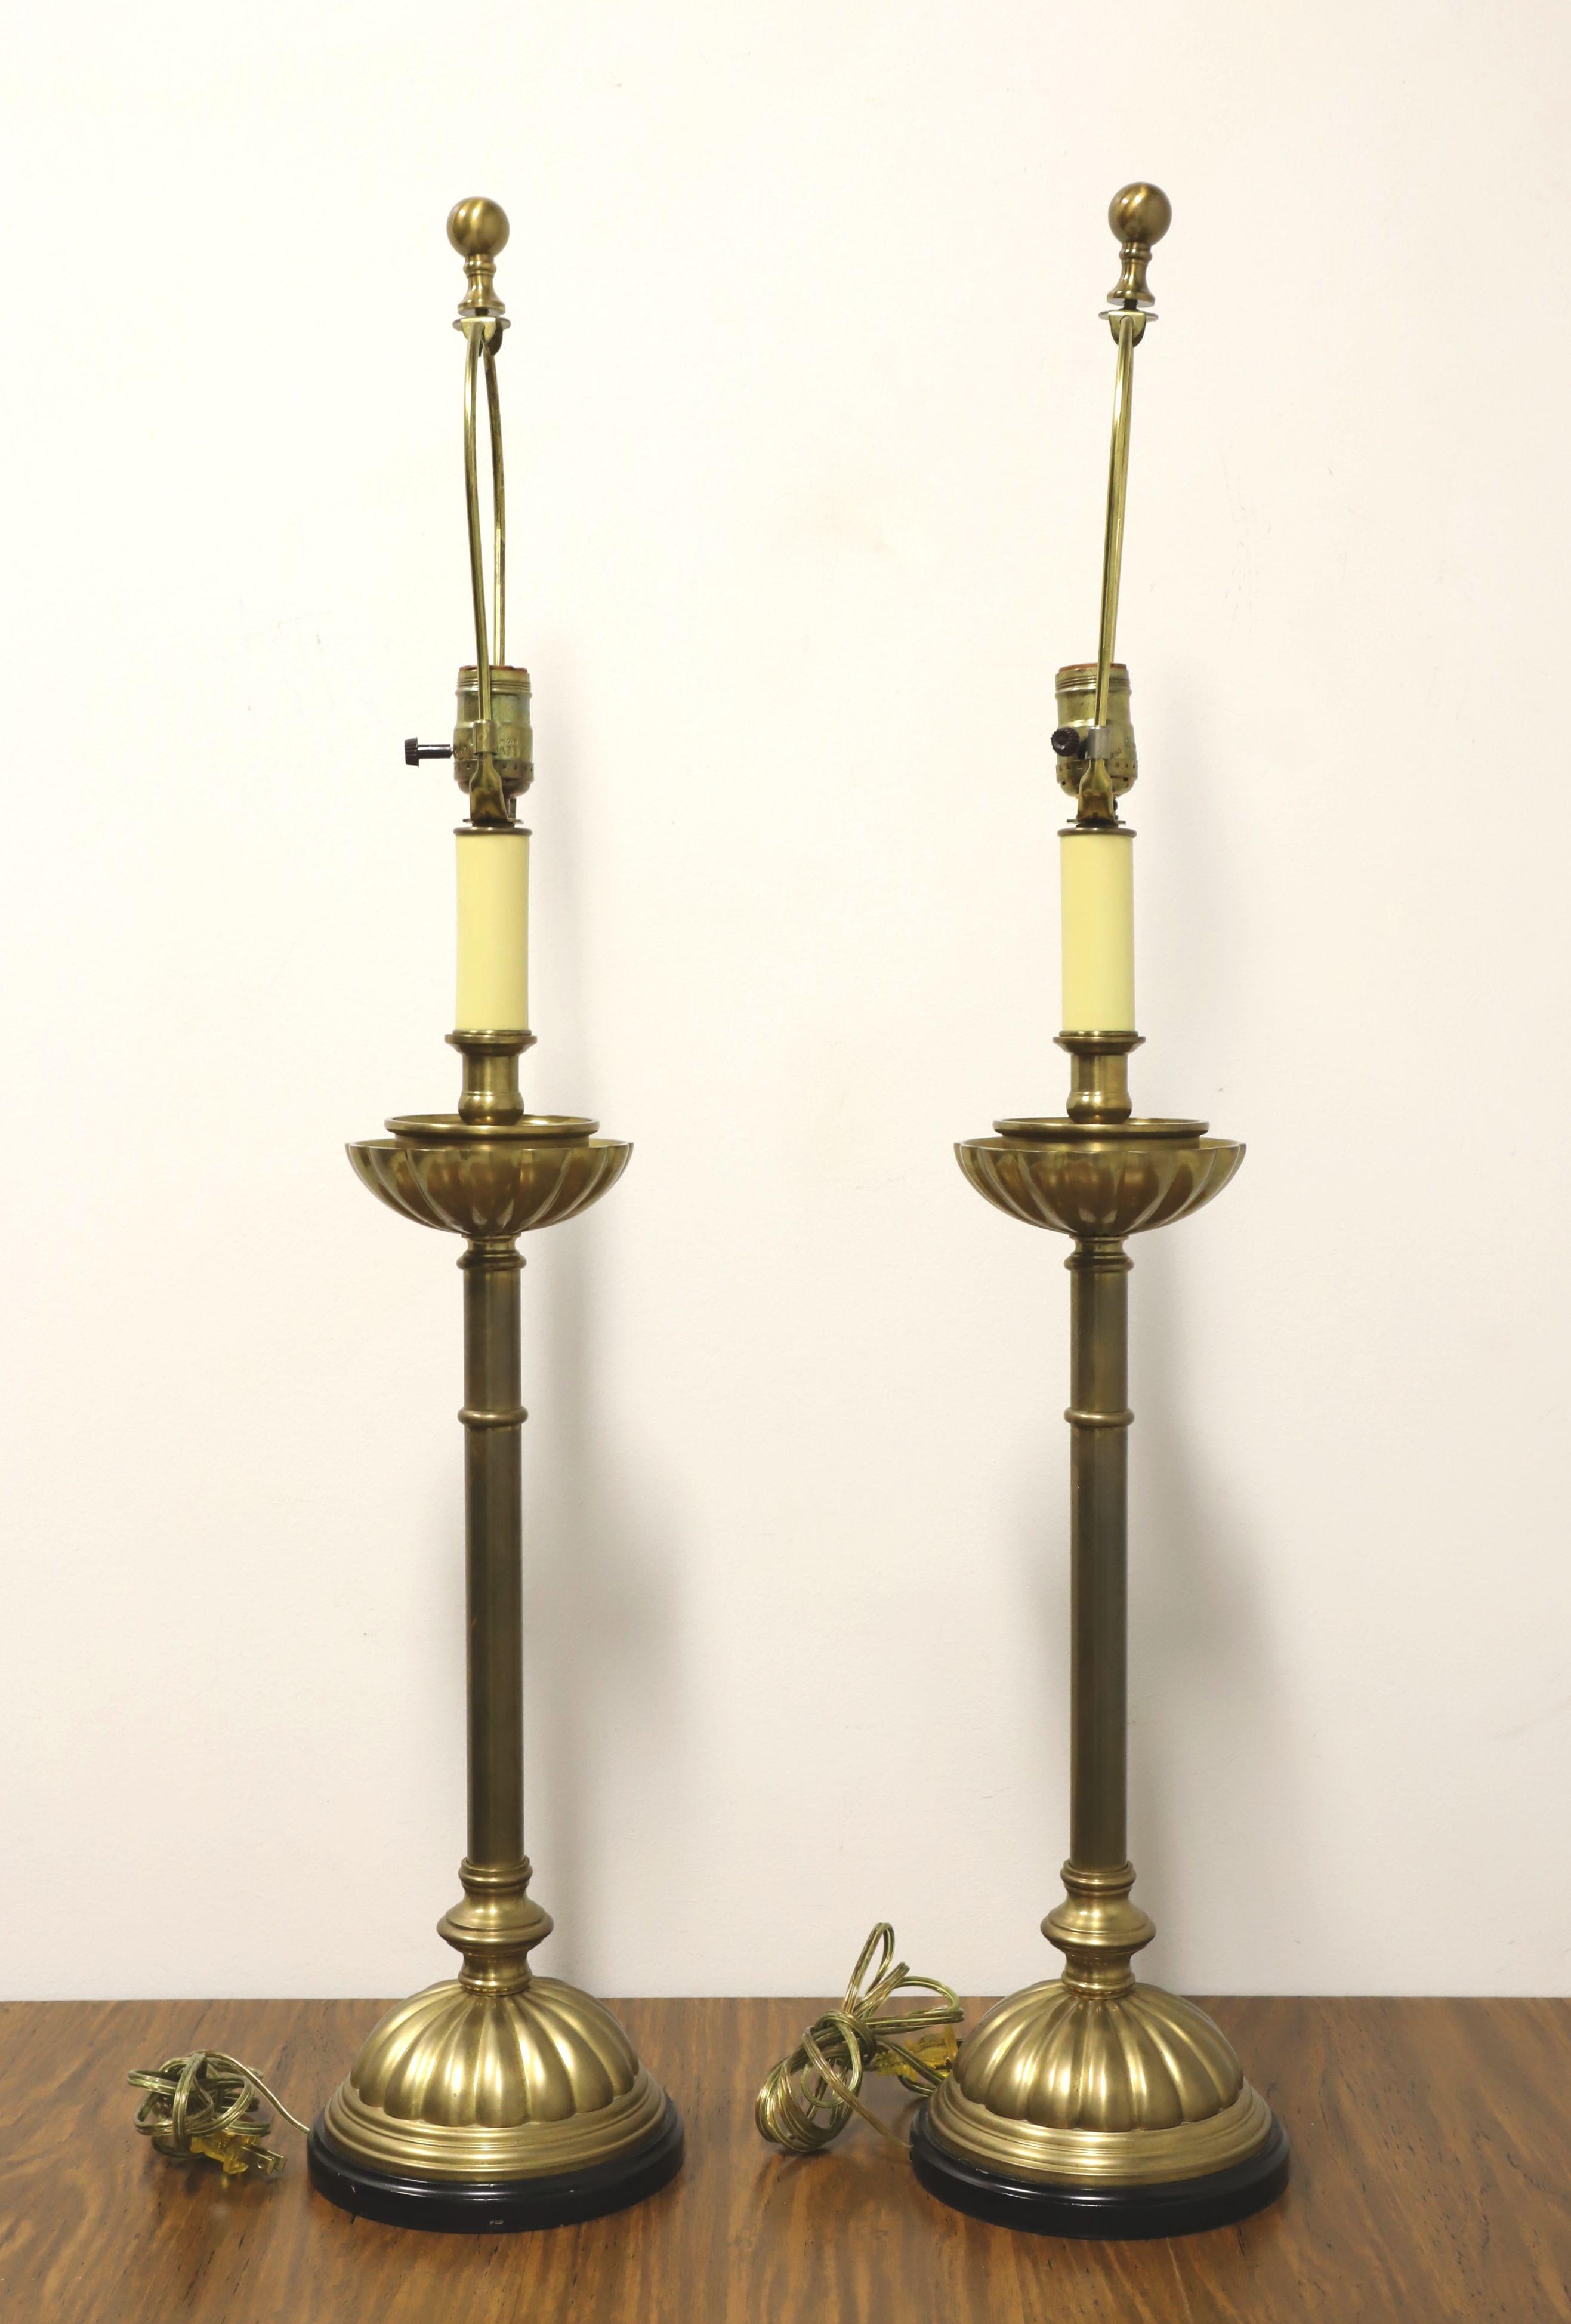 Ein Paar Kerzenständer-Tischlampen im traditionellen Stil, ohne Markenzeichen. Aus massivem Messing mit einer Kerzenhalterform, einer geriffelten oberen Schale an der Basis des Kerzenteils, einer weißen Kunststofffassung für die Glühbirne, um den